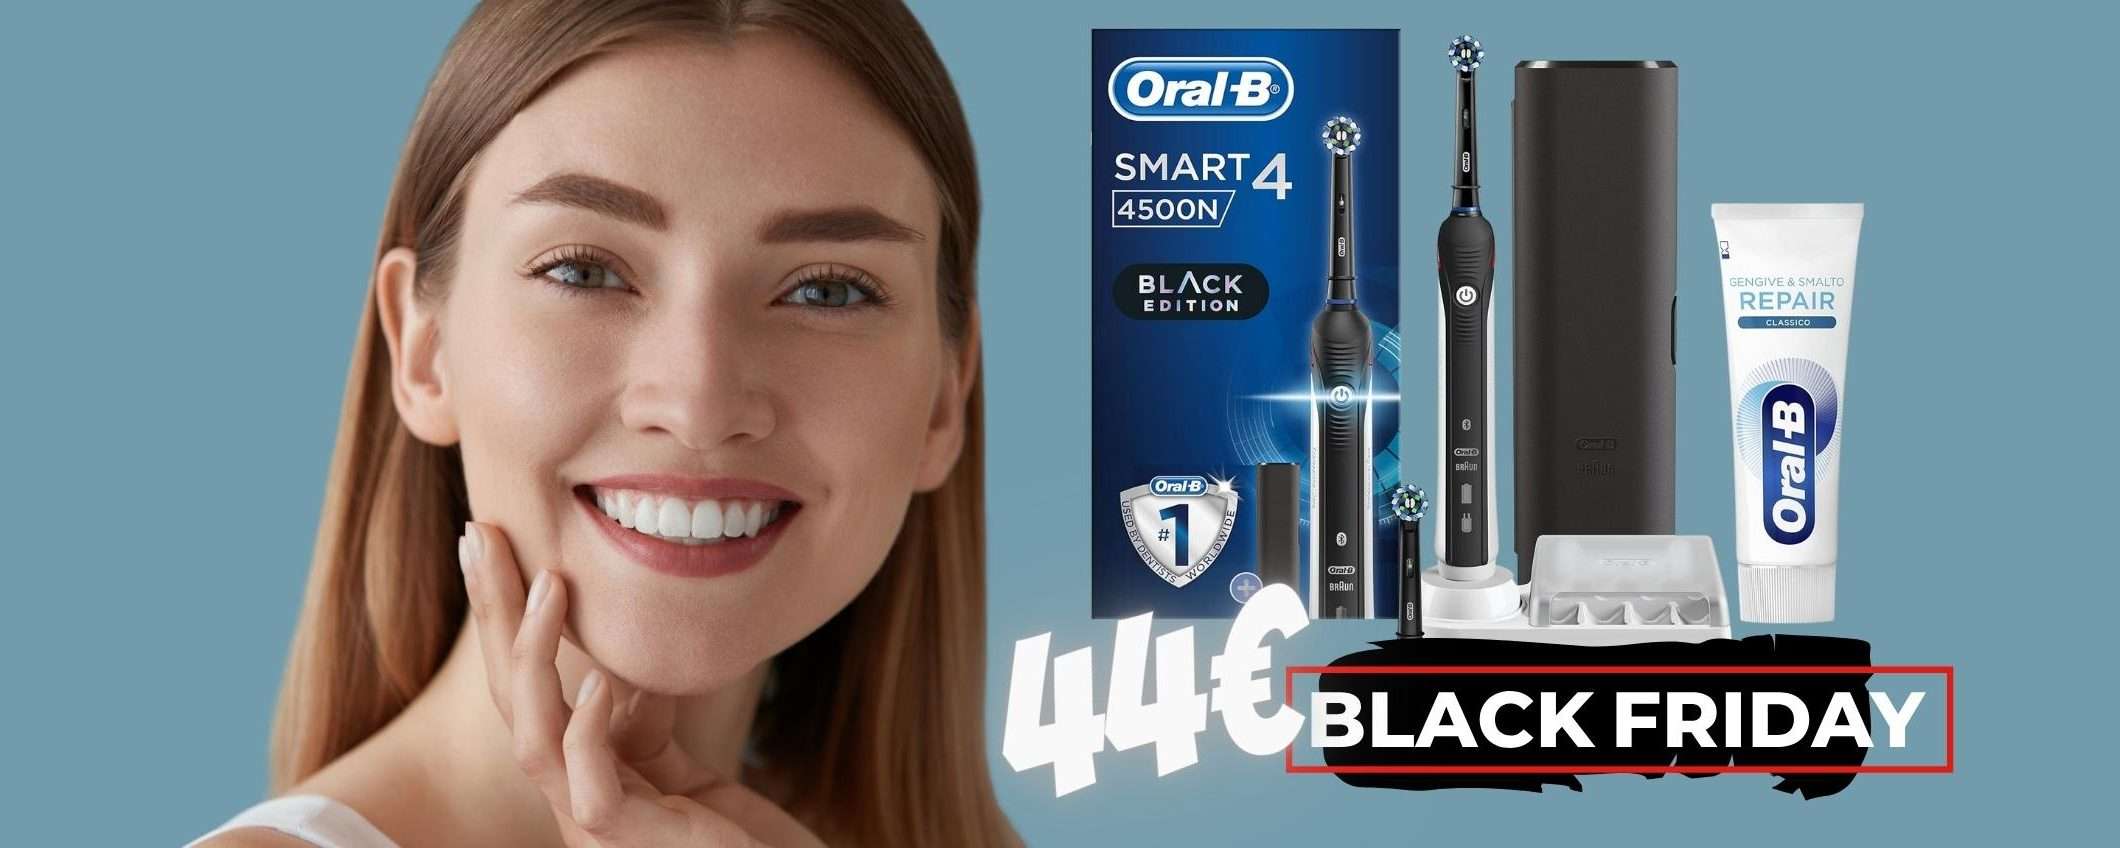 Il MIGLIORE spazzolino elettrico, Oral-B Smart 4, al 44% (limitato)